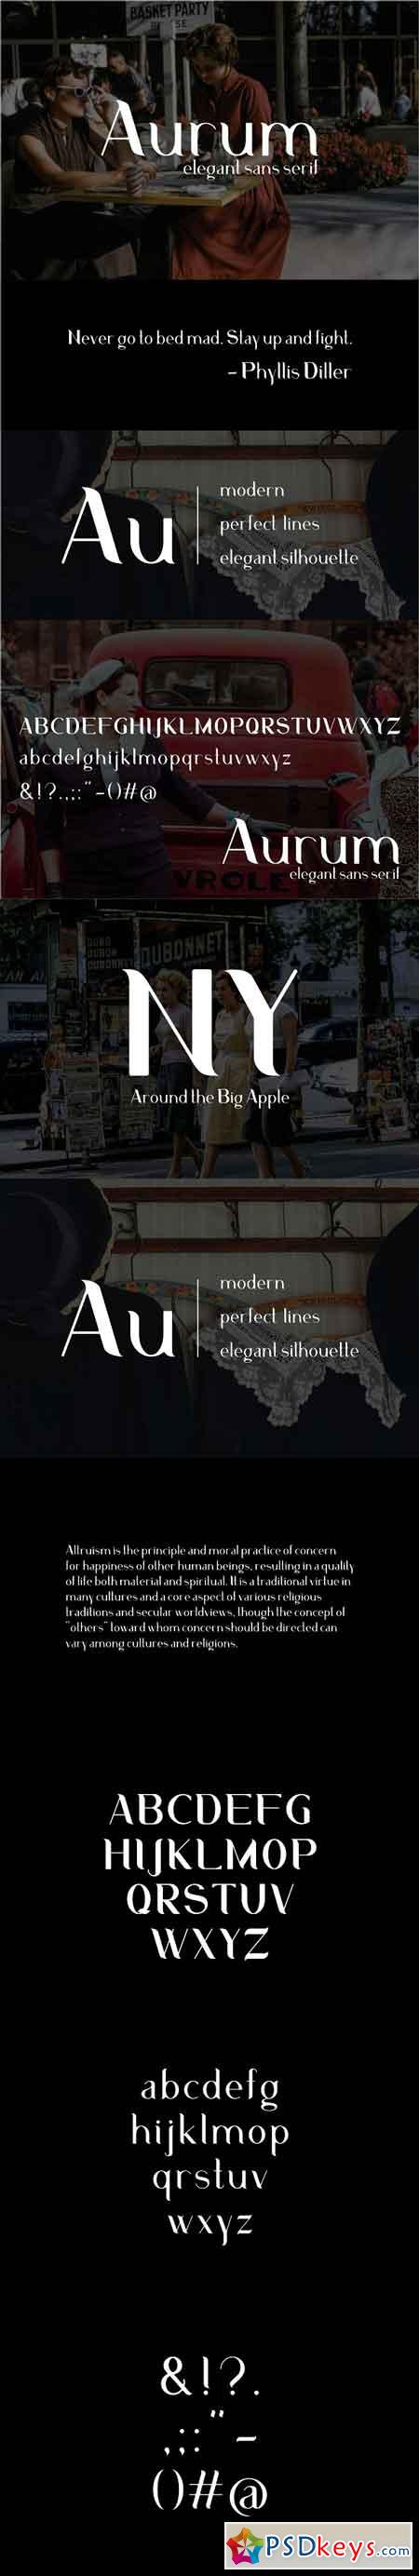 Aurum Elegant Sans Serif typeface 2840368